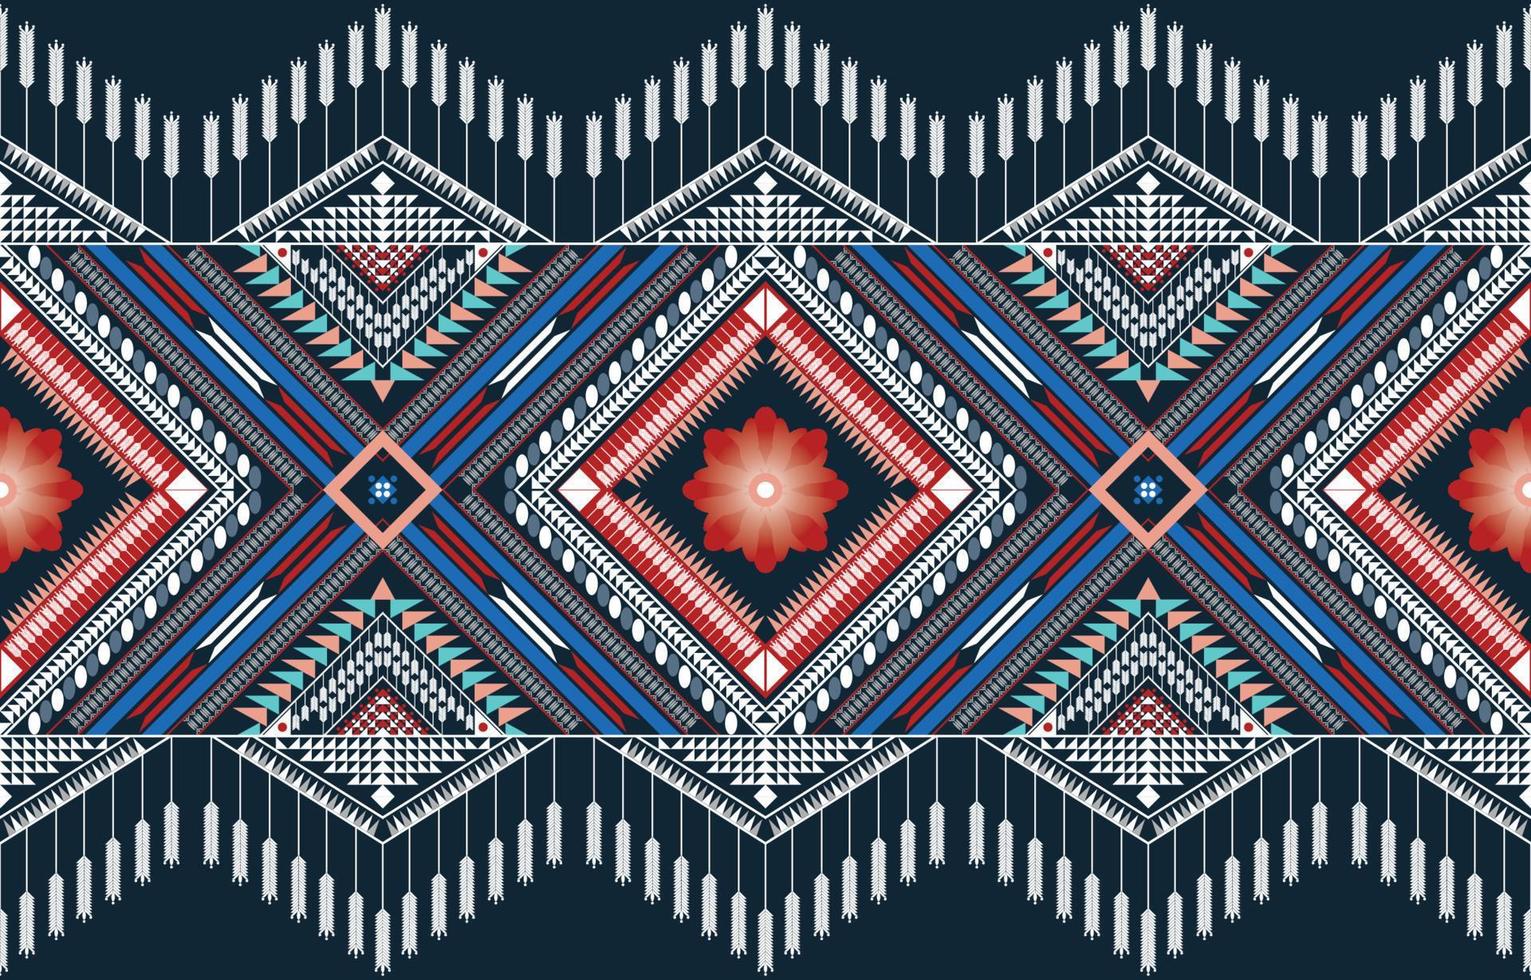 fundo tribal étnico do vetor com elementos folclóricos decorativos. impressão de arte padrão geométrico abstrato asteca. design para tapete, tapis, cobertor, papel de parede, design de pano, tecido, têxtil, tapete, bordado.